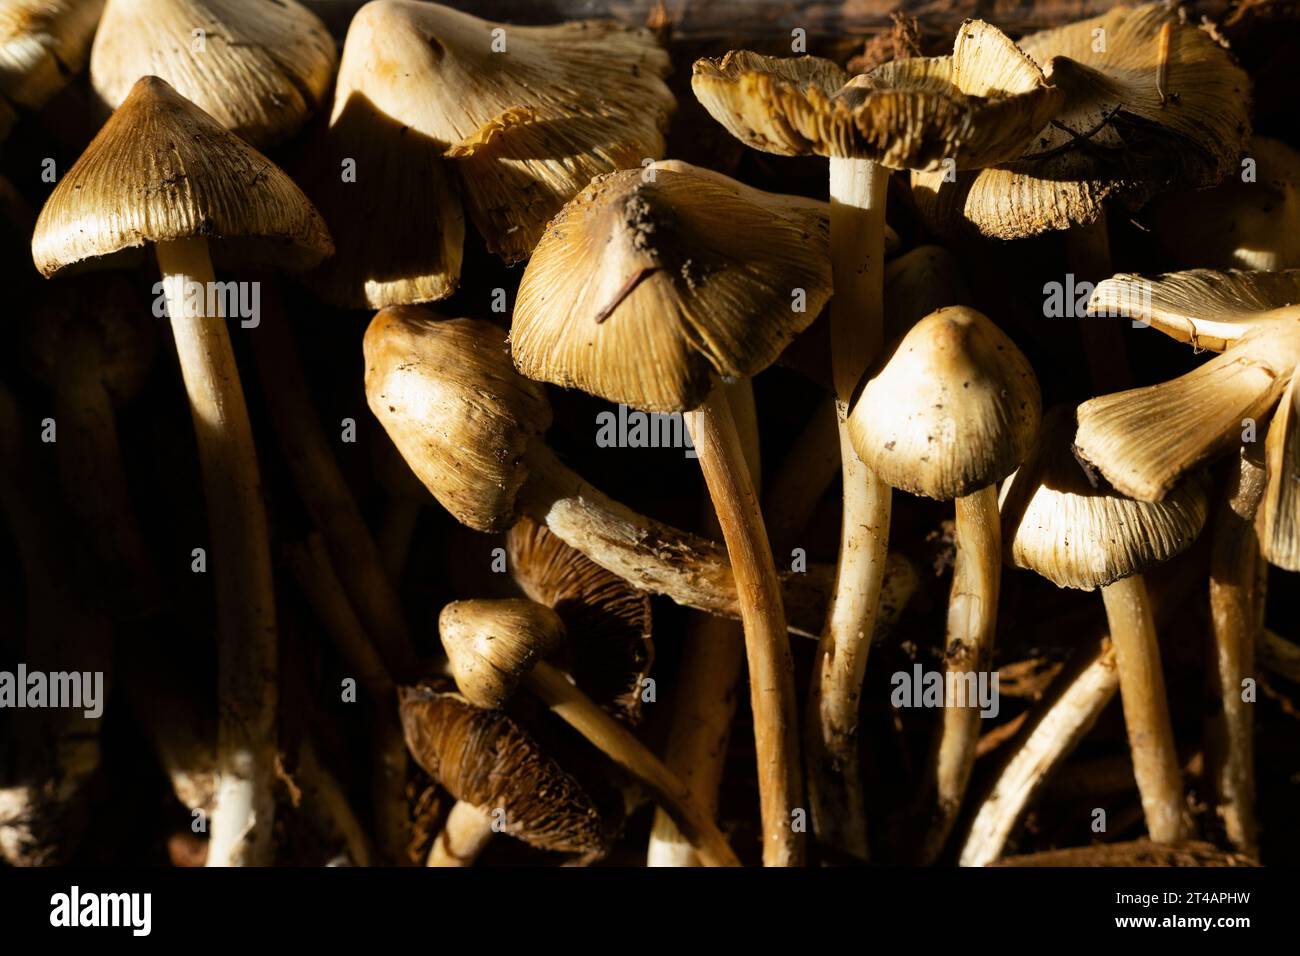 Pseudosperma sororium mushrooms. Stock Photo